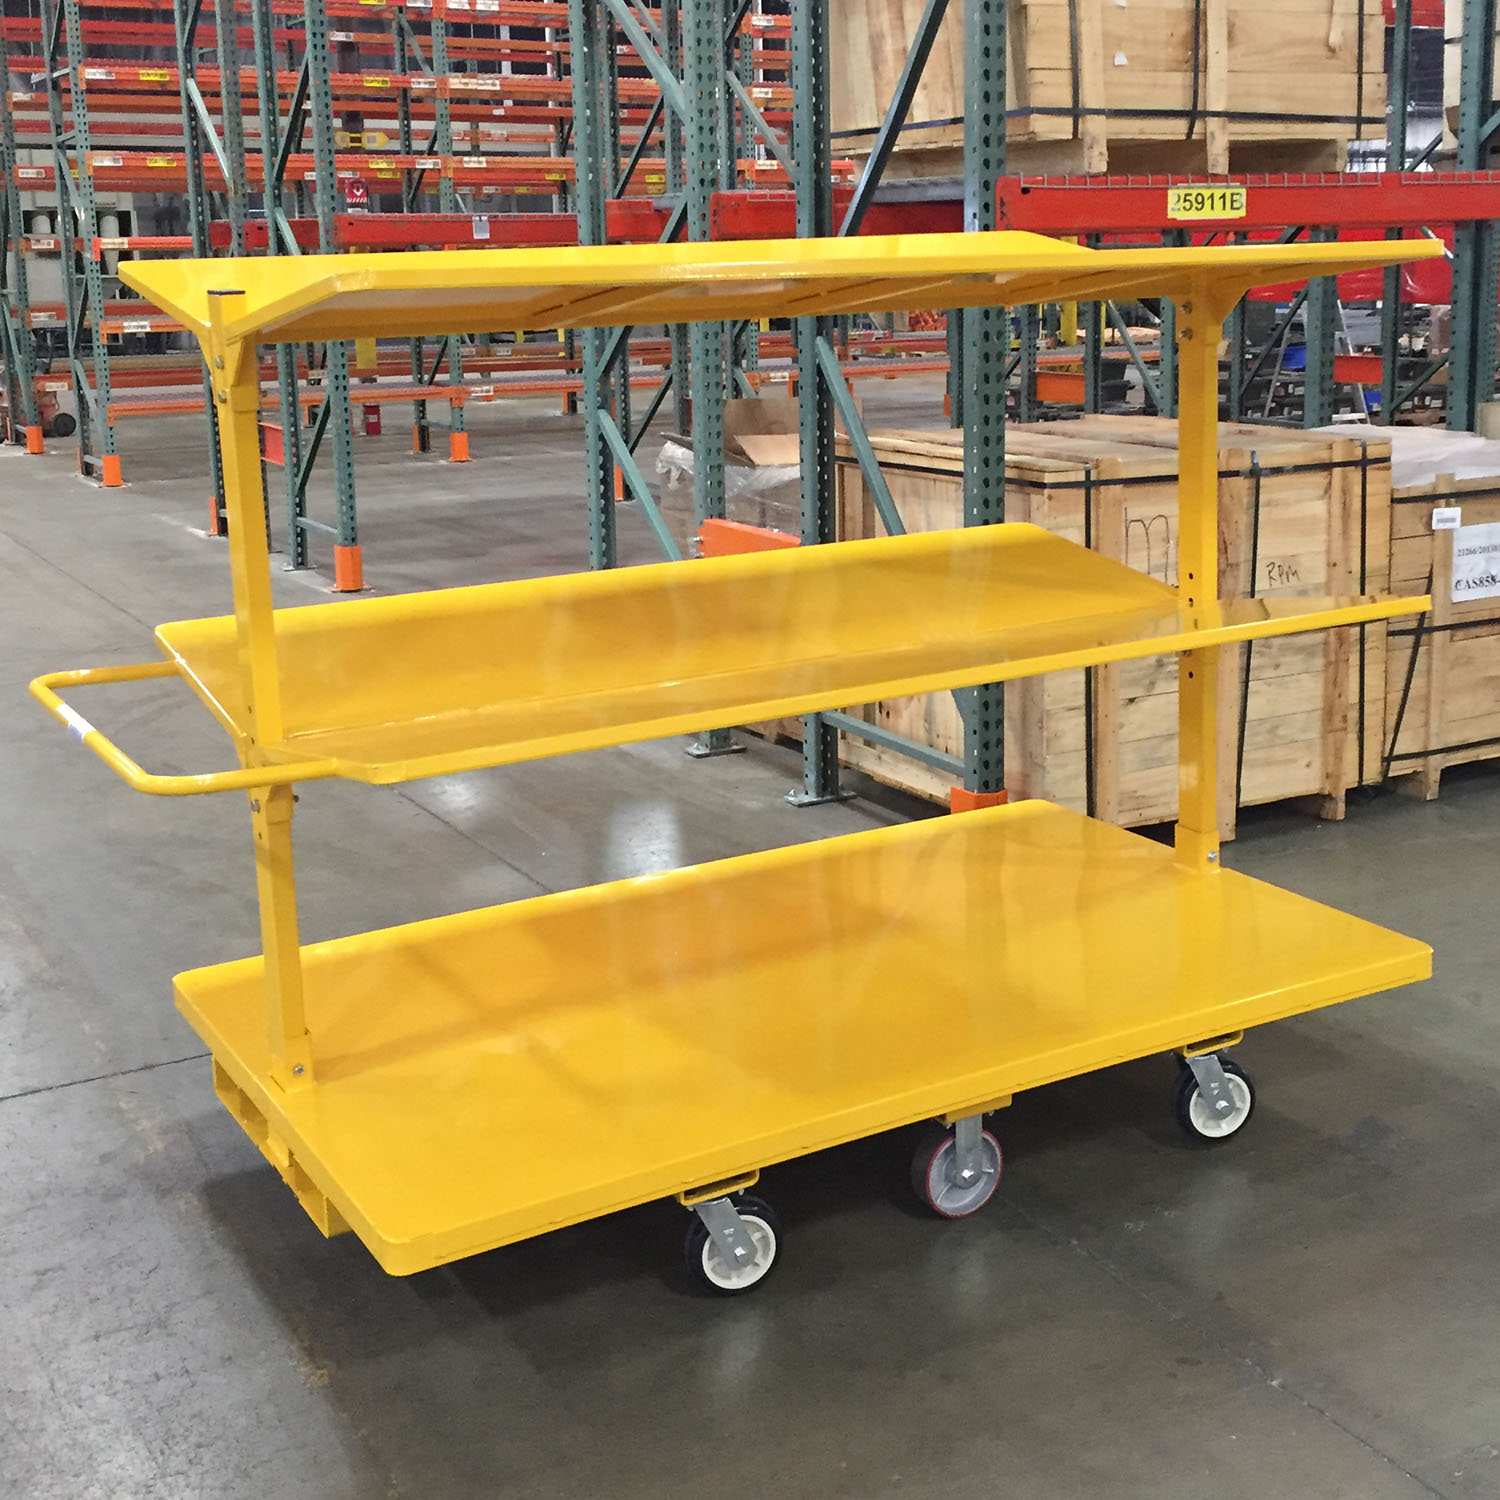 Forklift compatible slant shelf distribution cart Forklift Cart picking cart material handling